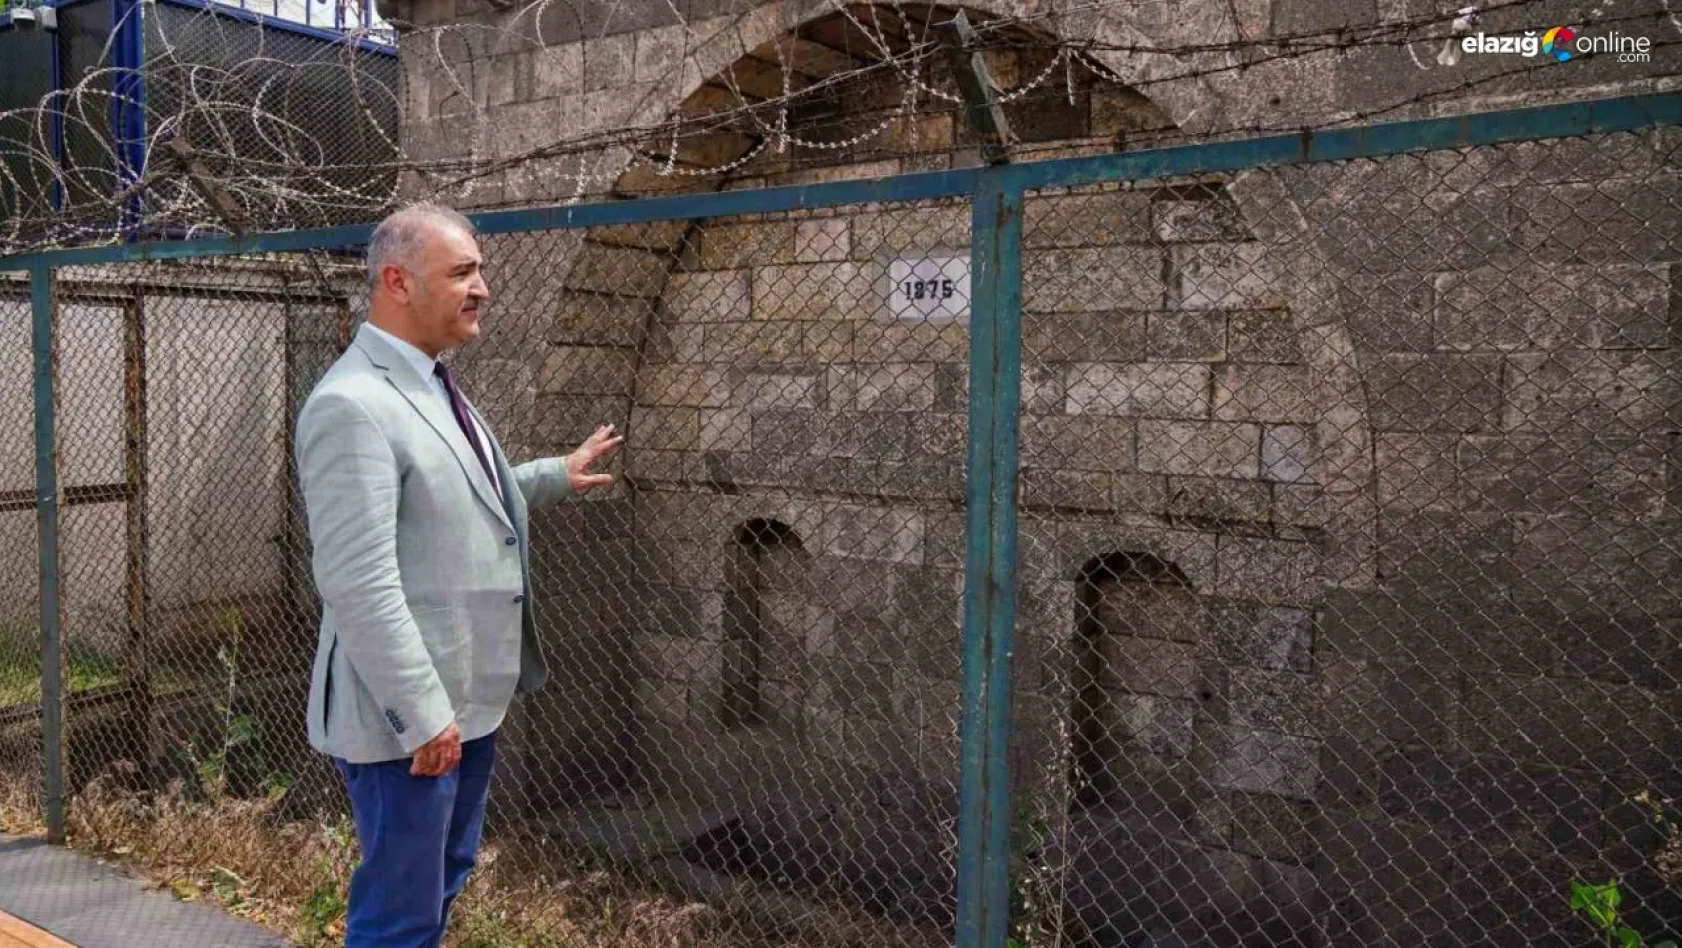 Diyarbakır'ın tarihi beş çeşmesi restorasyona alınacak